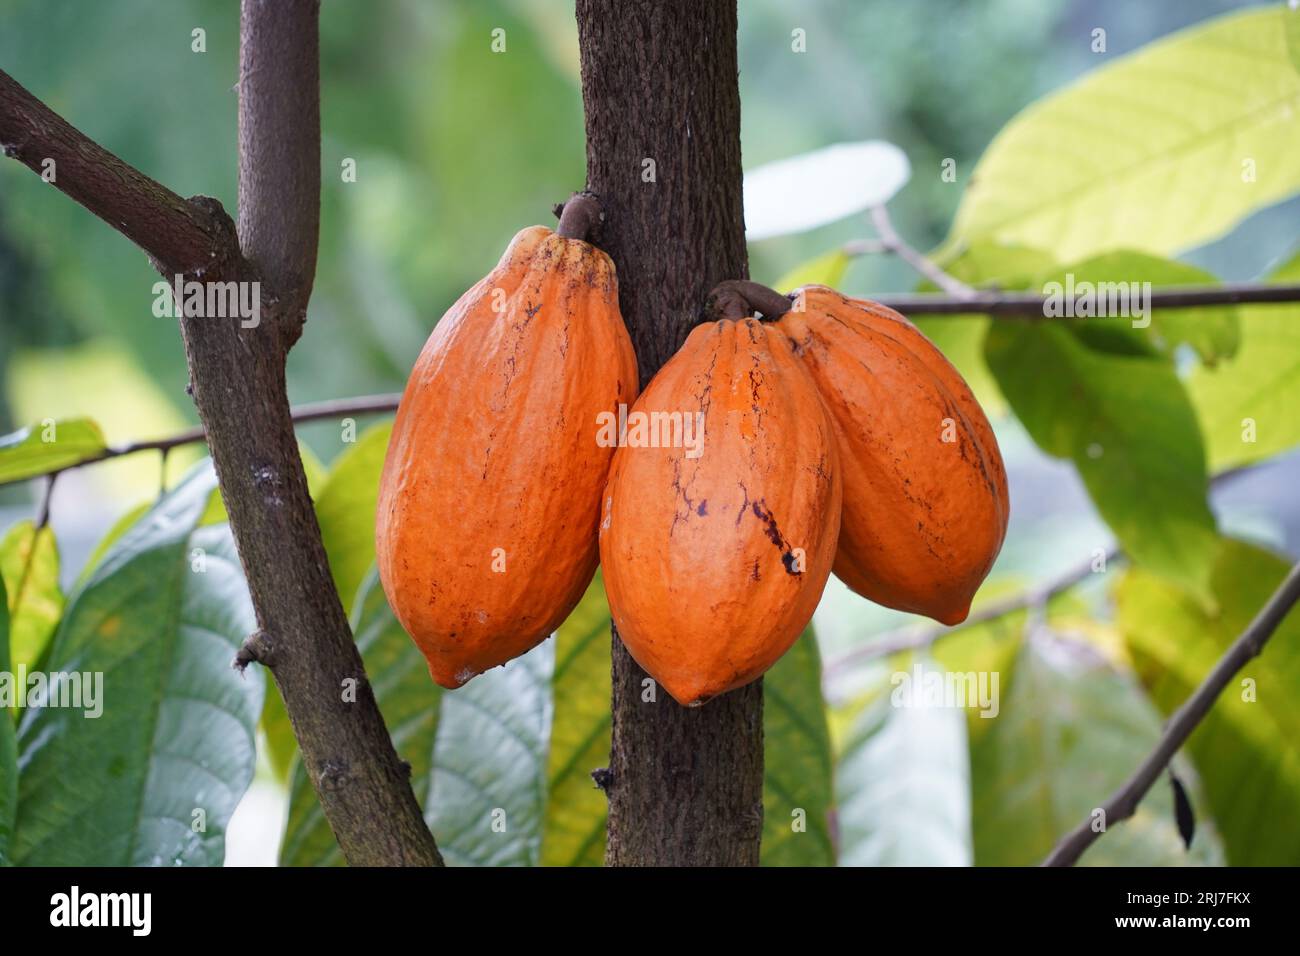 Kakaoschoten oder Kakaobaumfrüchte, im Lateinischen Theobroma-Kakao genannt, in natürlicher Verfassung gefangen. Stockfoto